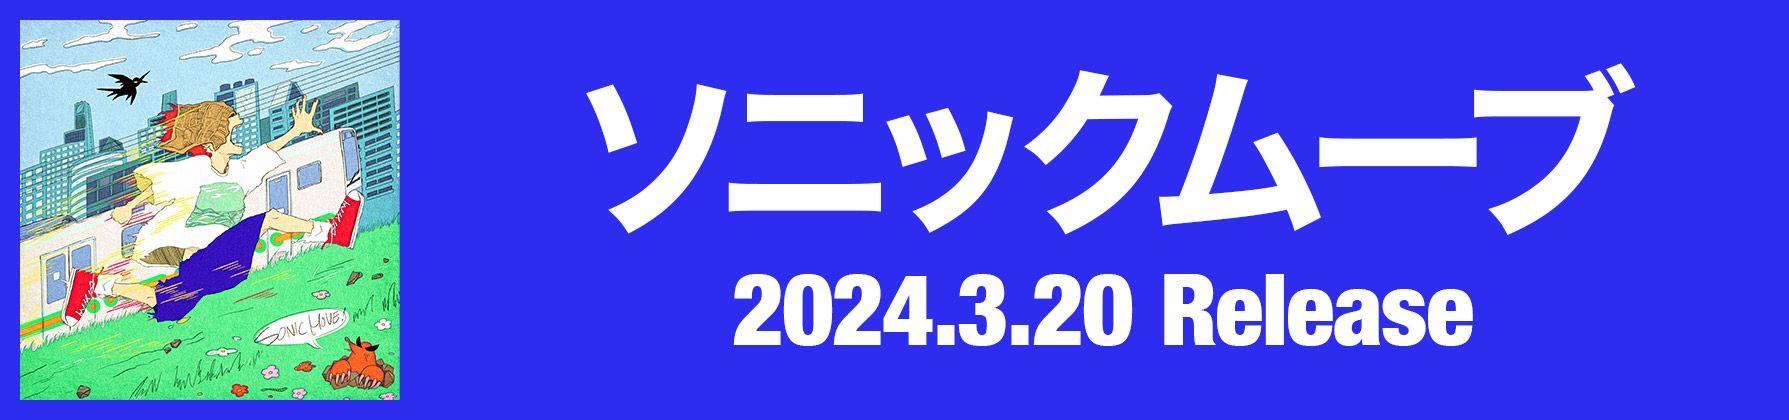 「ソニックムーブ」2024.3.20 Release